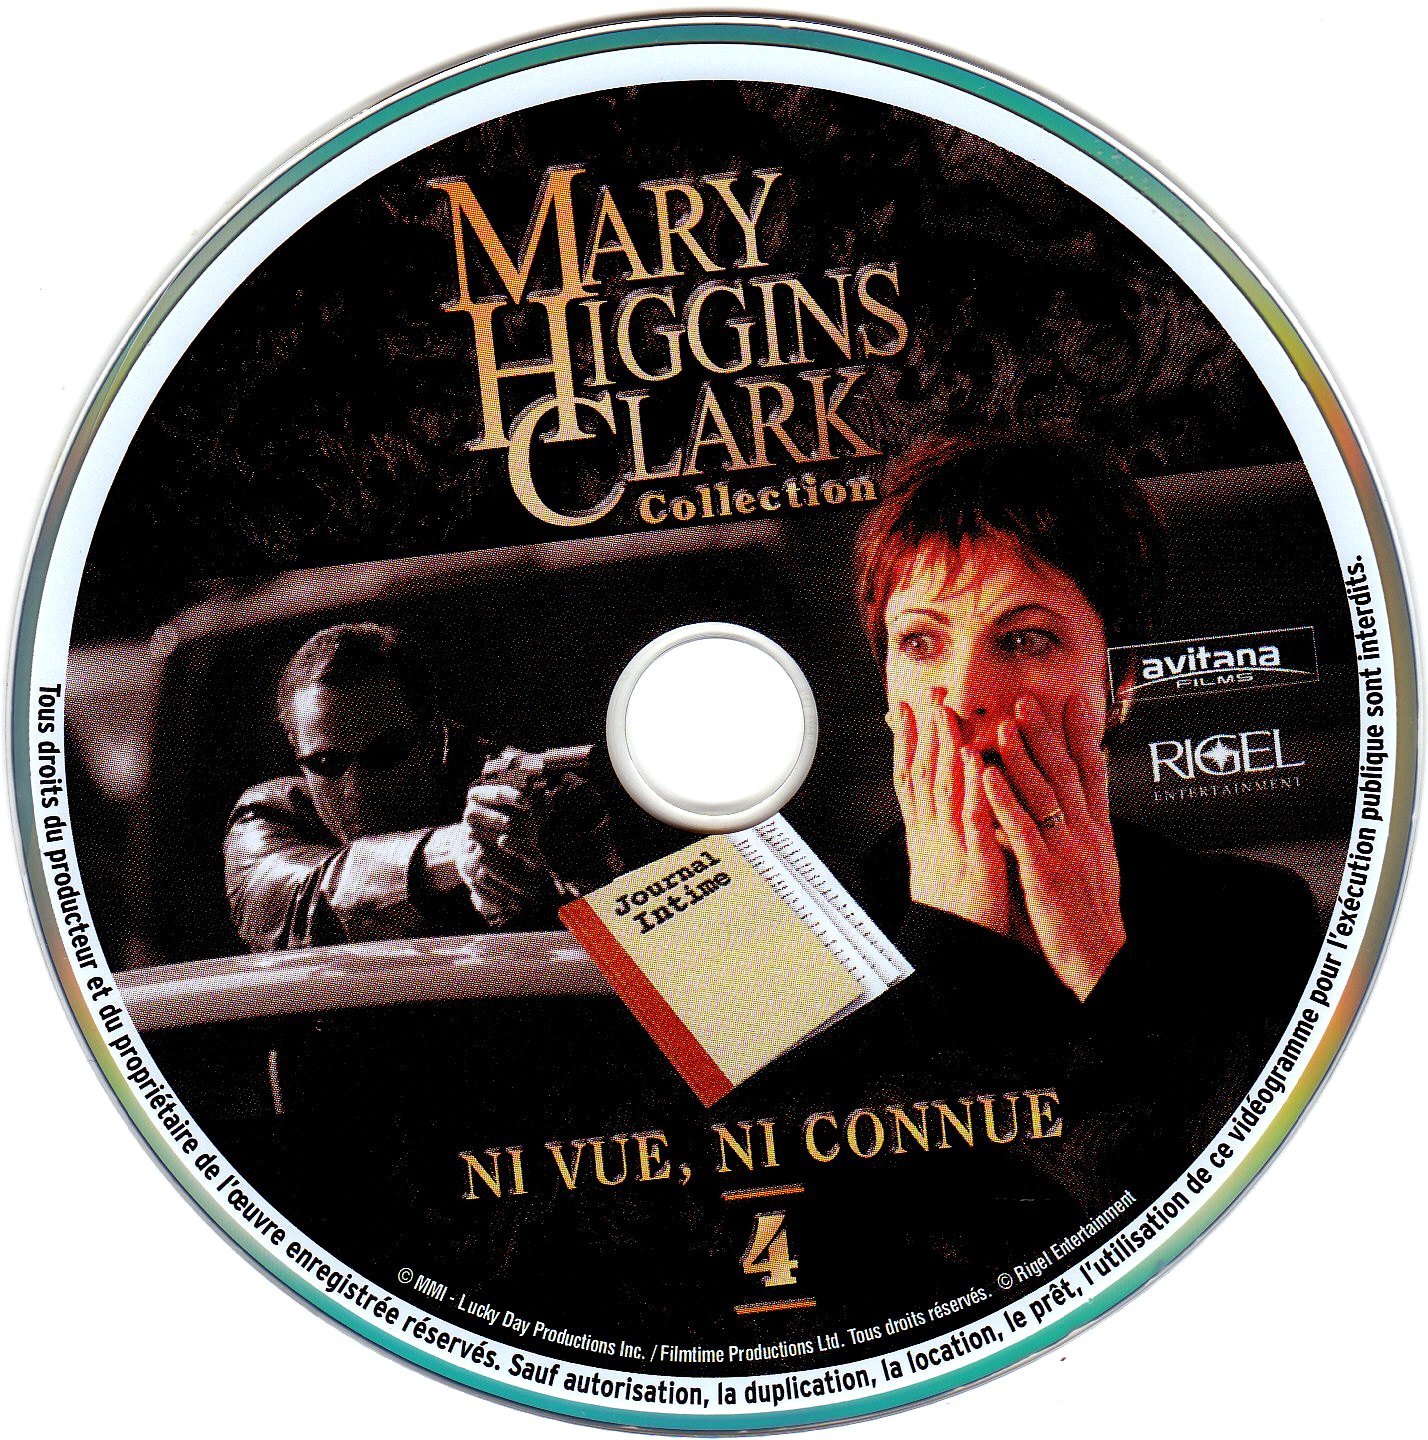 Sticker de Mary Higgins Clark vol 04 - Ni vue ni connue - Cinéma Passion